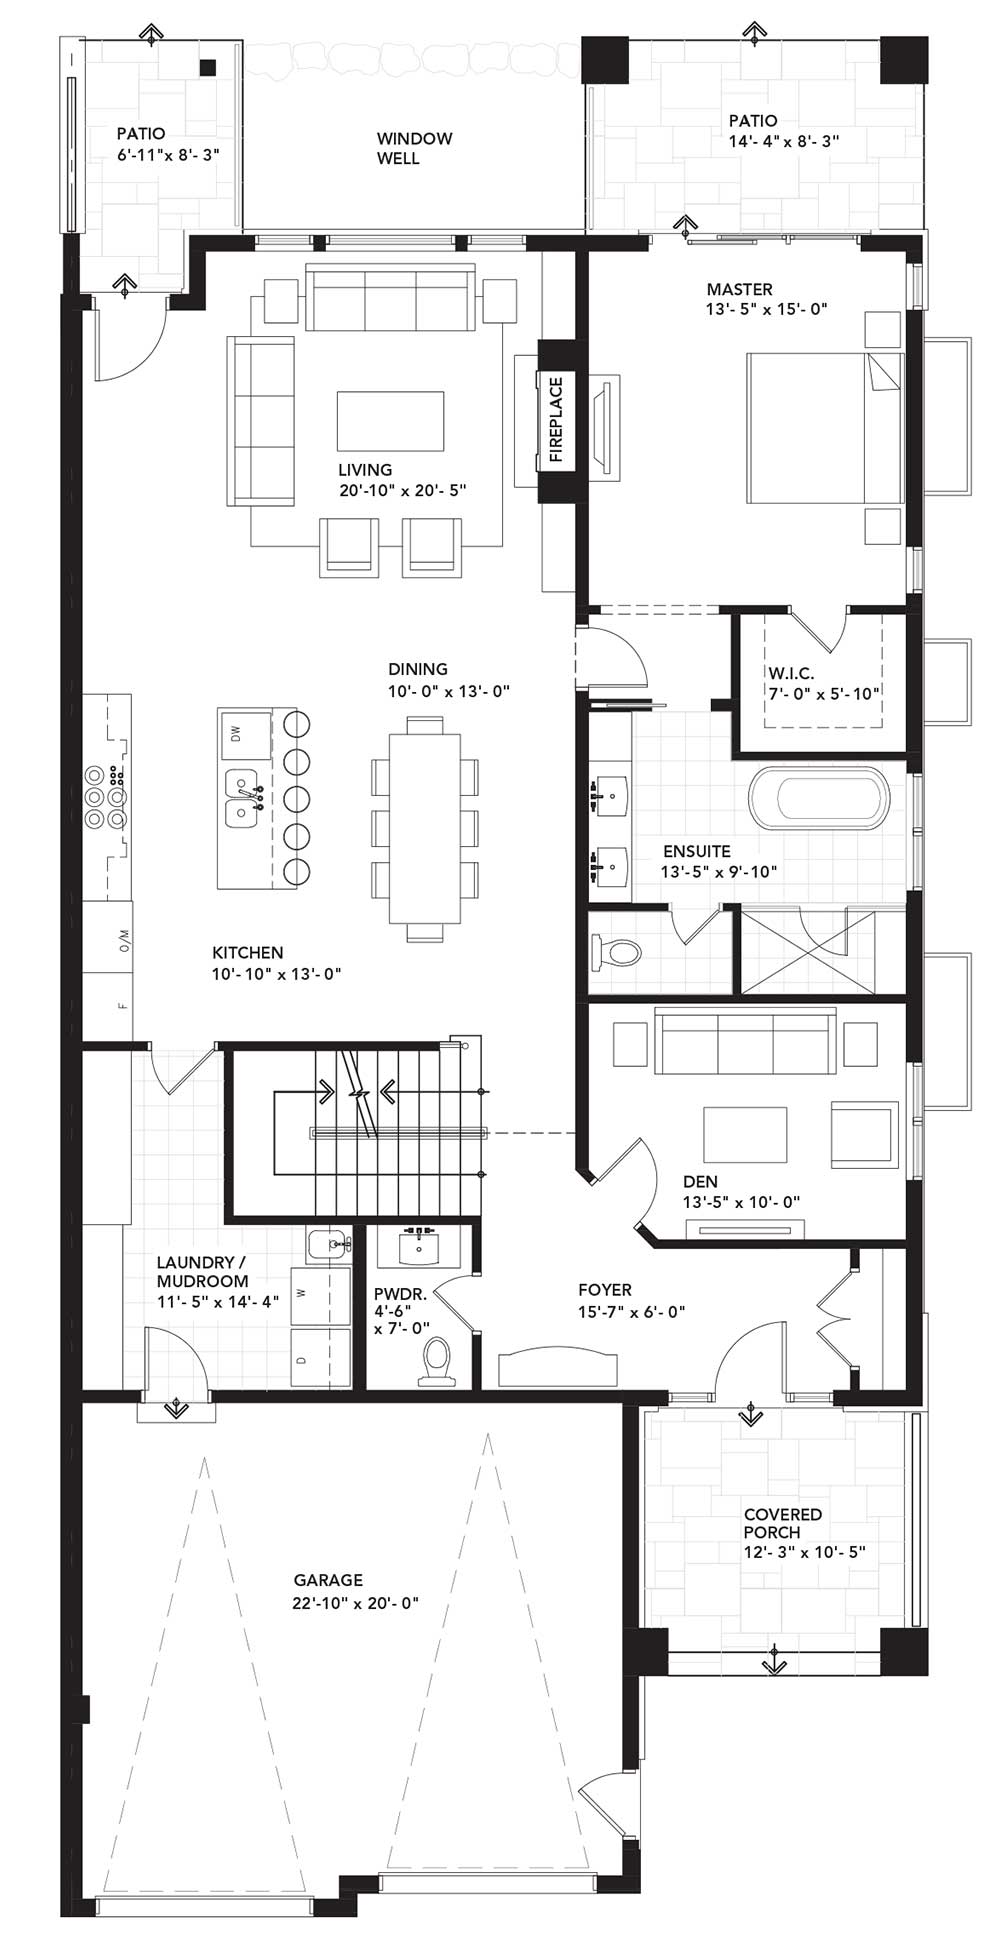 Main Floor Plan - Right Unit